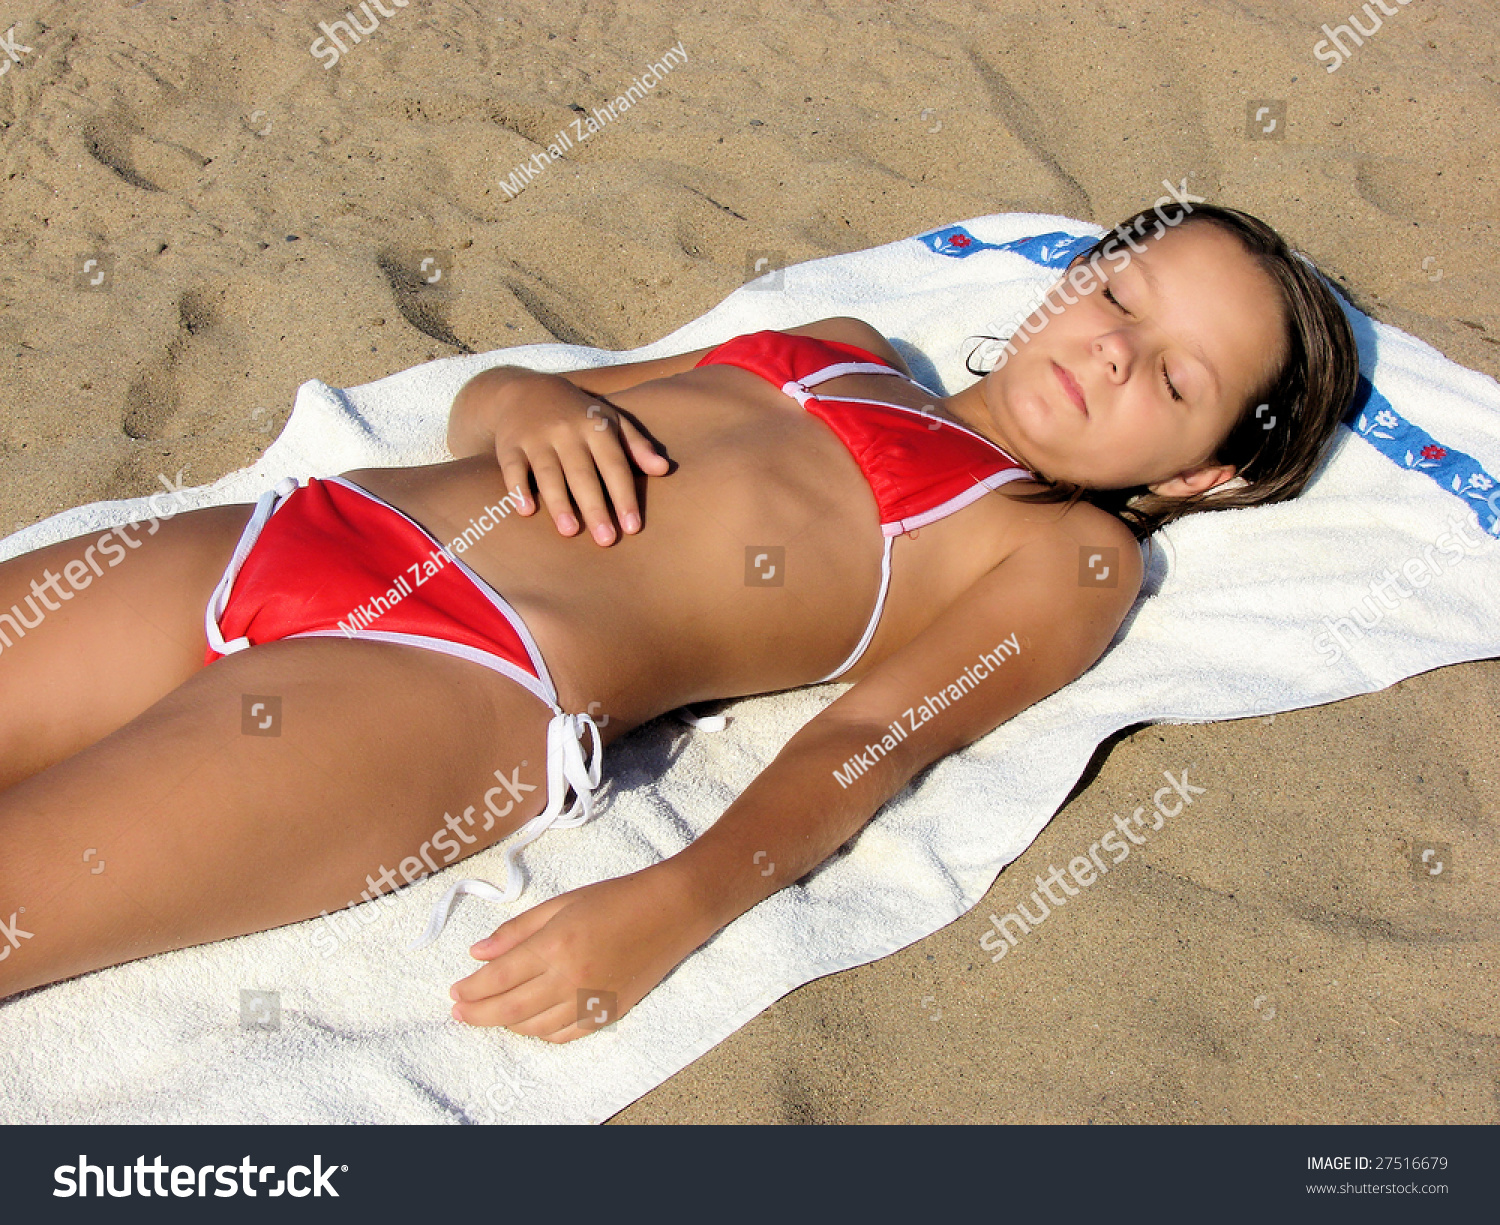 Pictures Of European Teens Sunbathing Nude 20